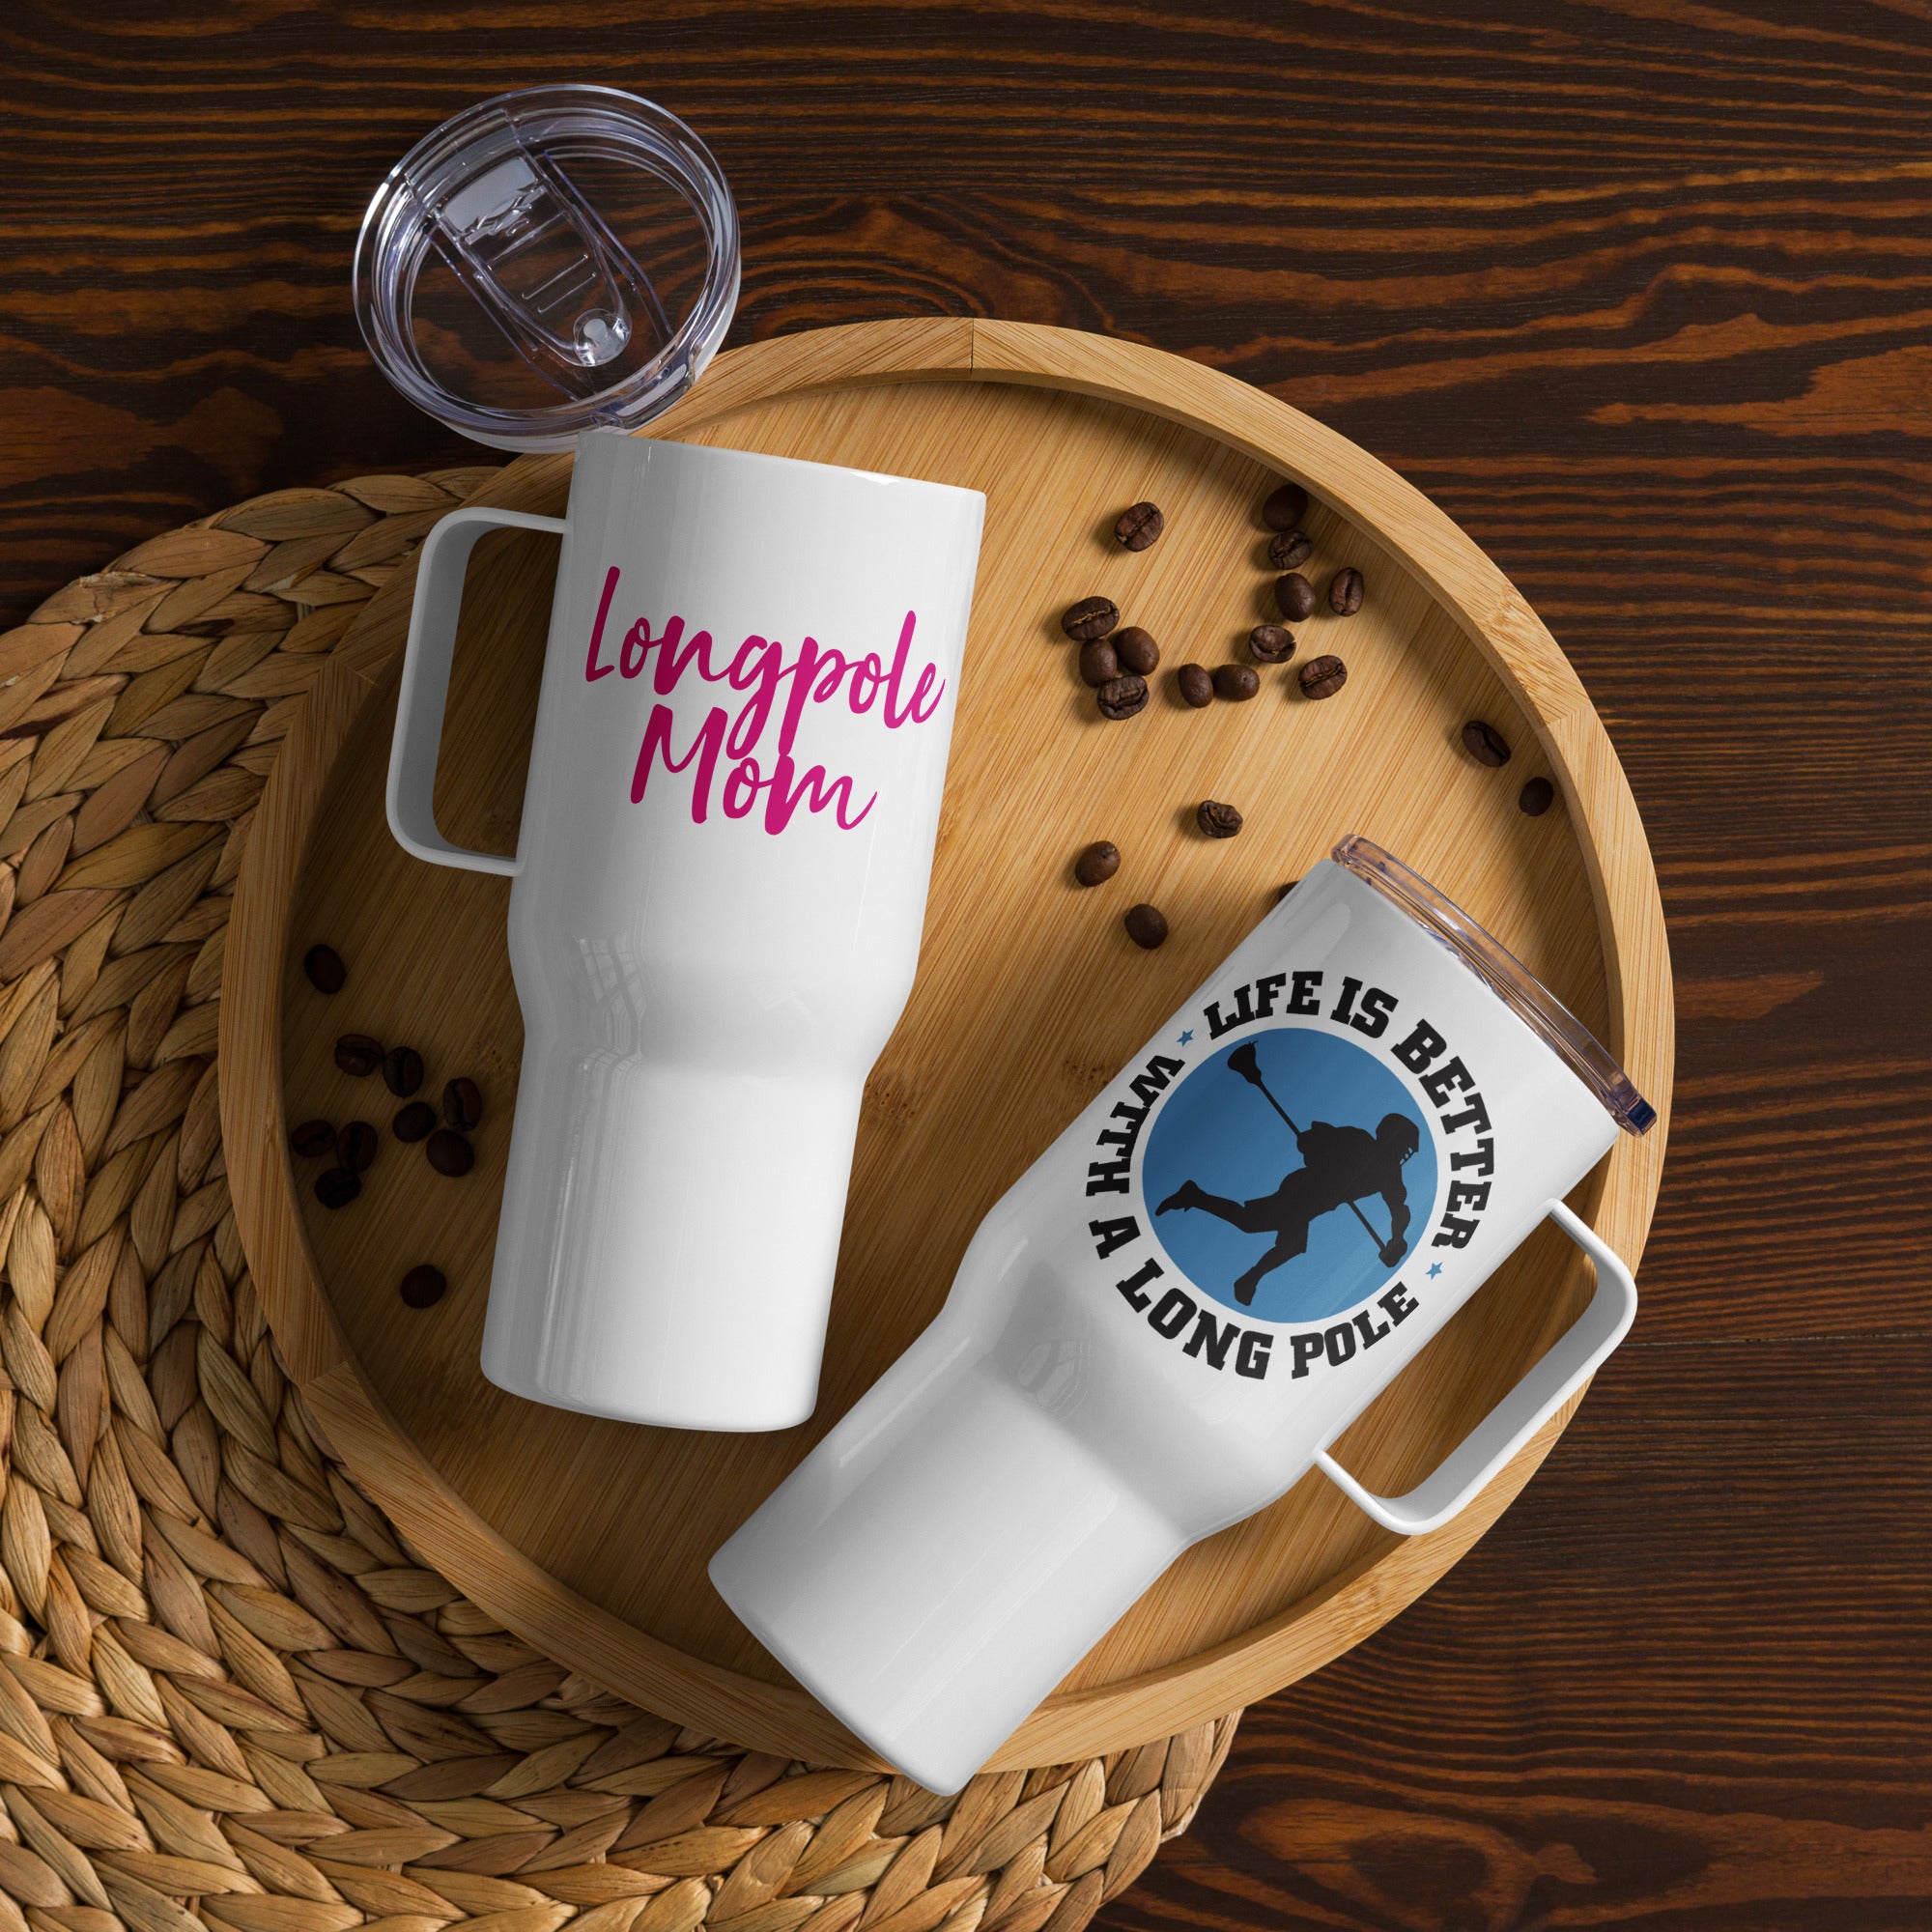 "Longpole Mom" Travel mug with a handle